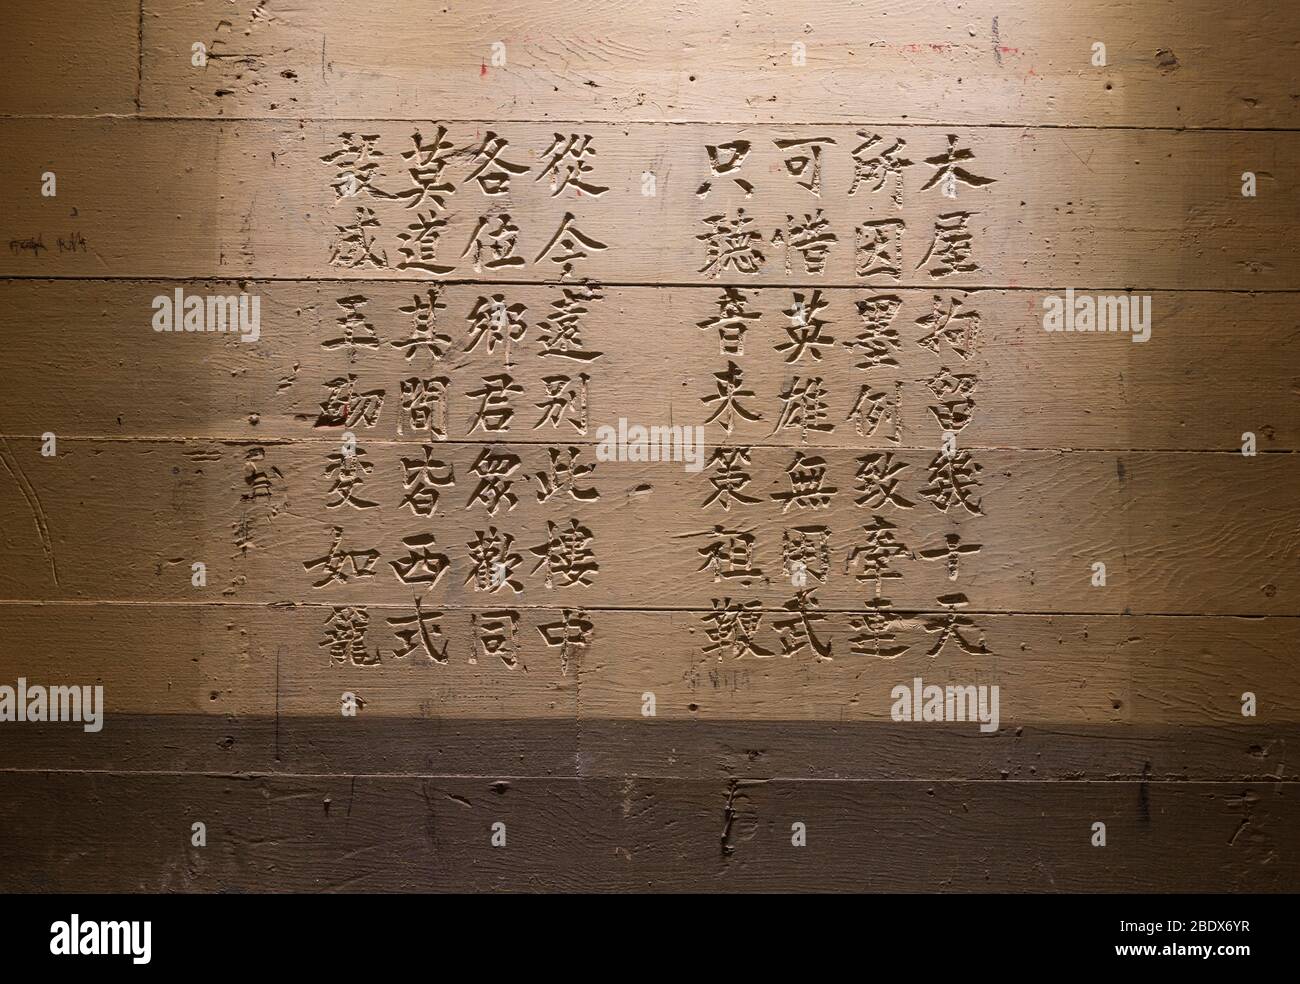 Chinesische Schrift, Angel Island, Kalifornien Stockfoto